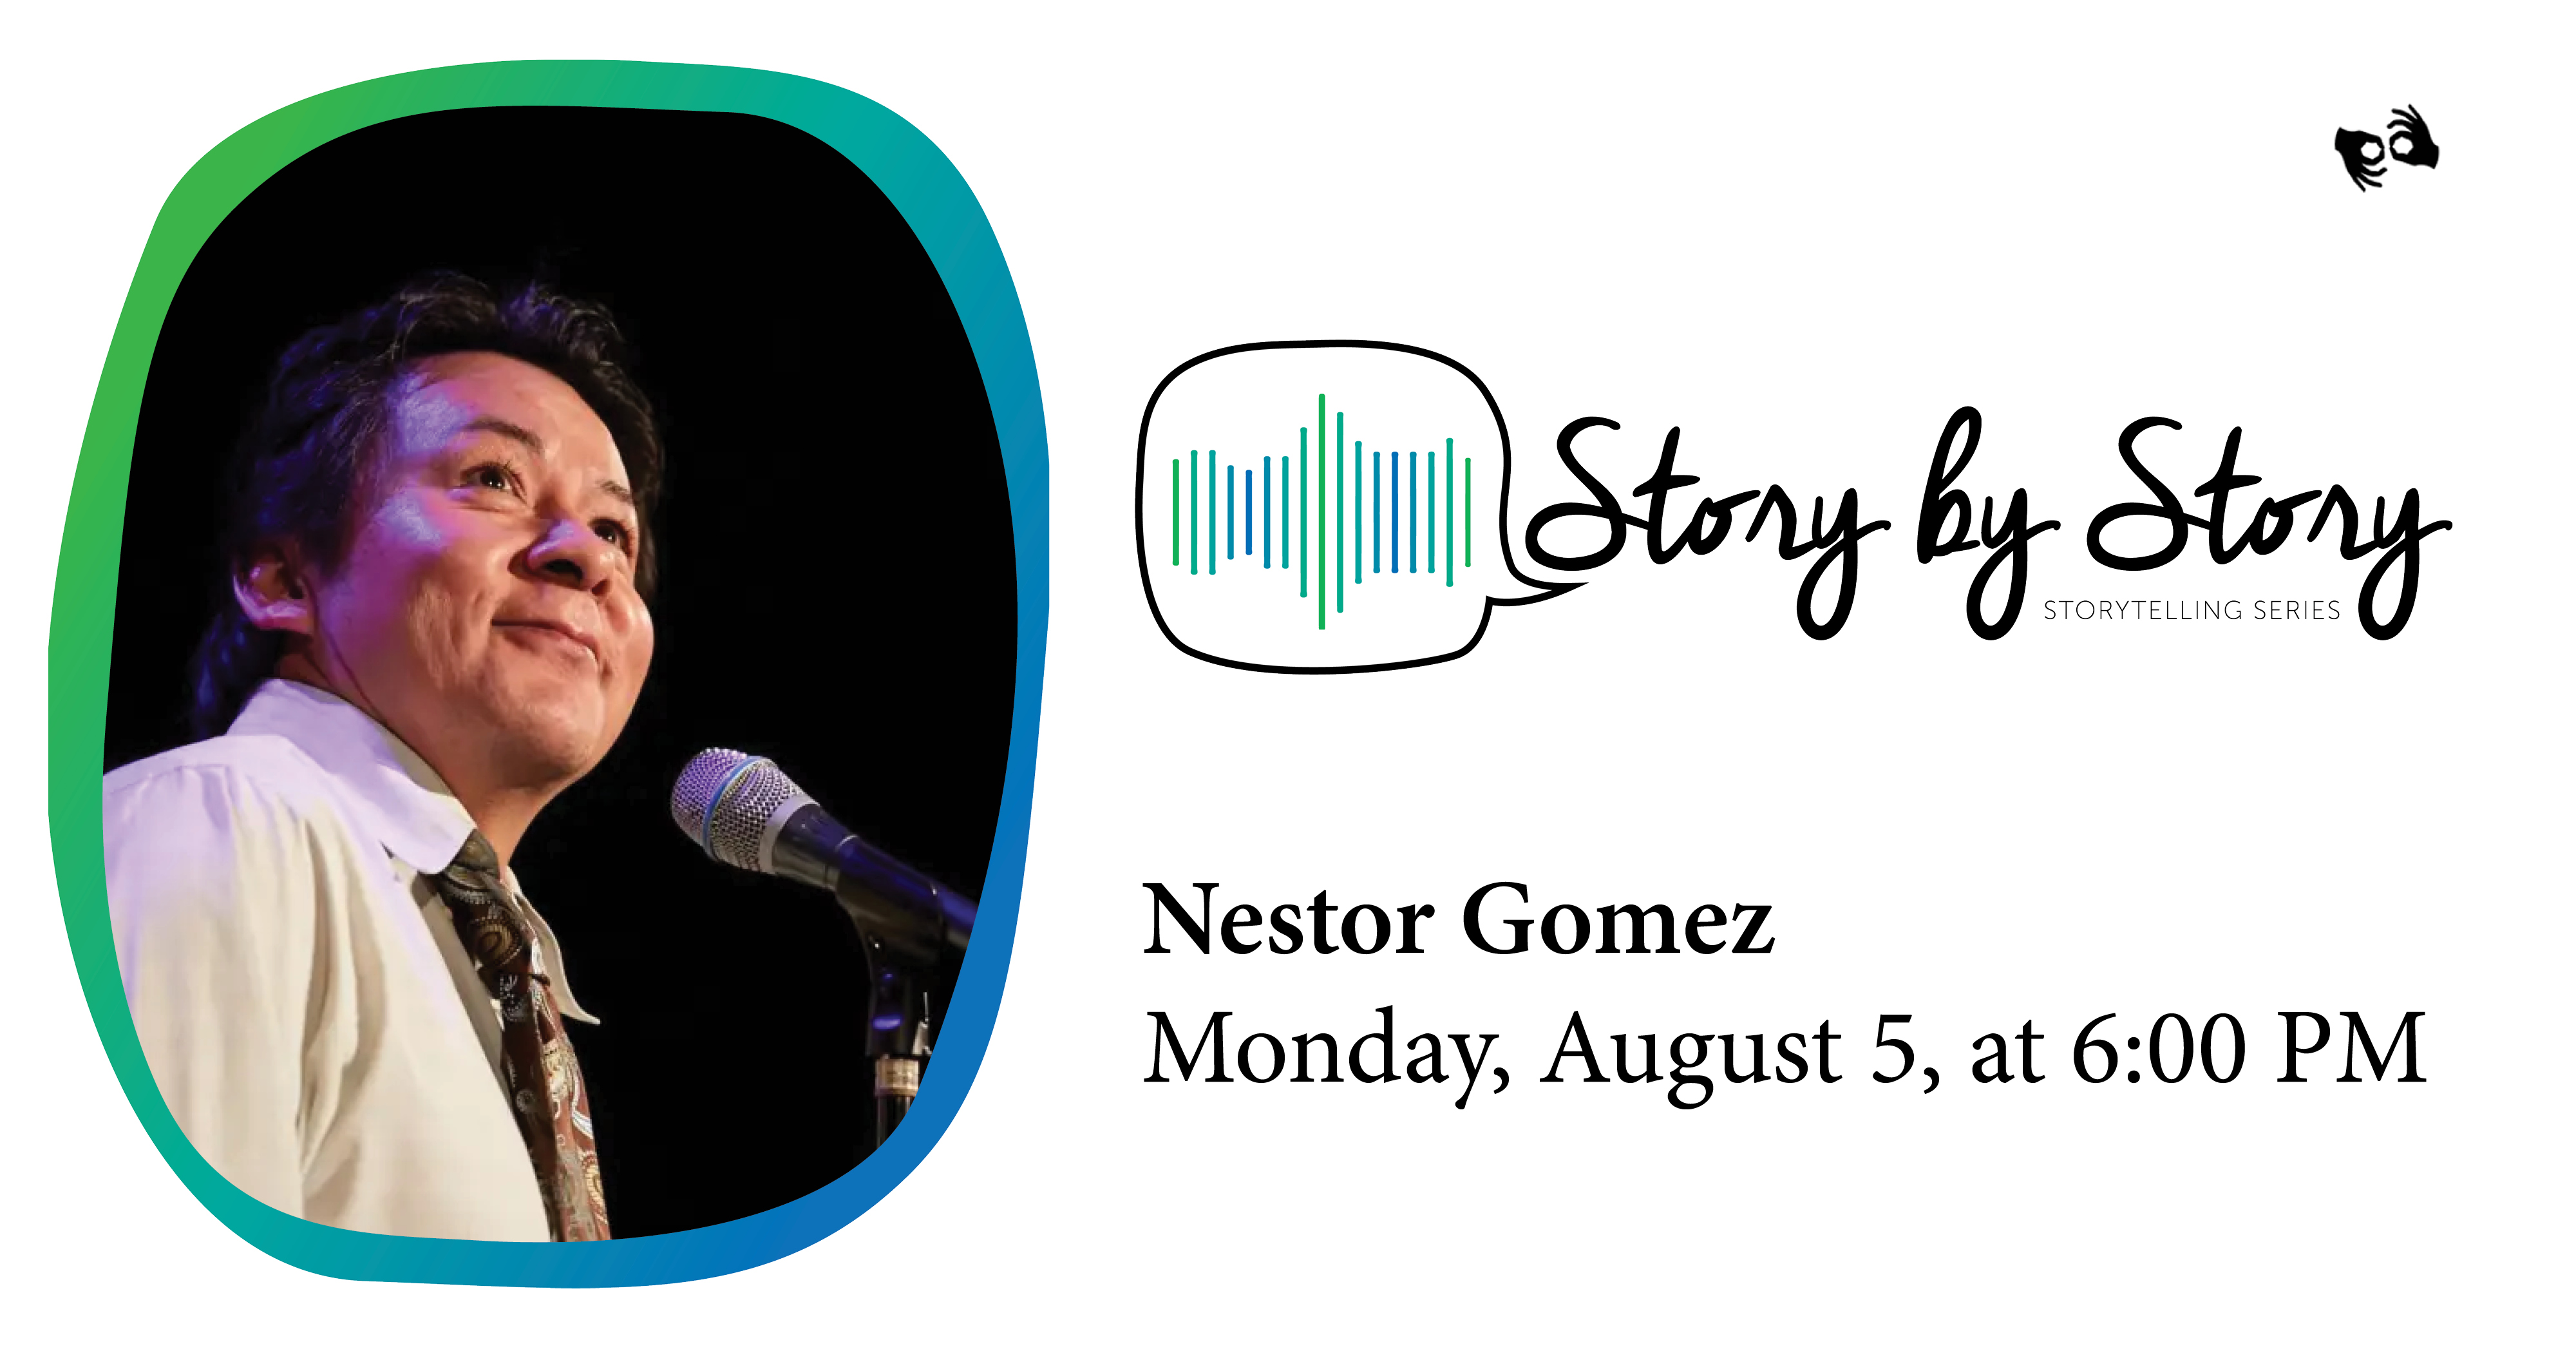 Photo of storyteller Nestor Gomez